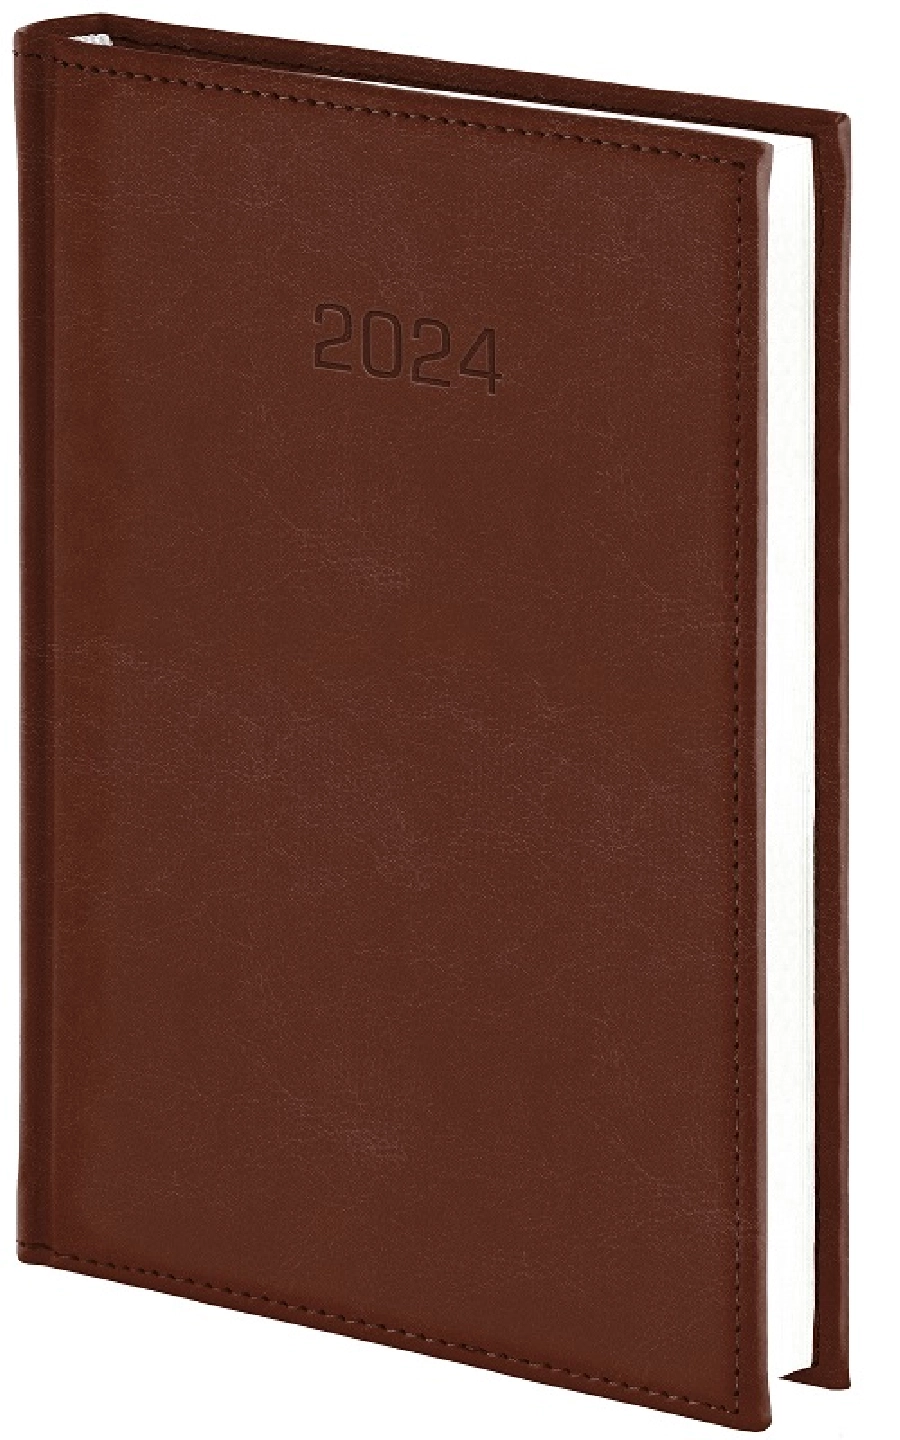 Vivella kalendarz książkowy 2024 tygodniowy A4 GR-160093 beżowy